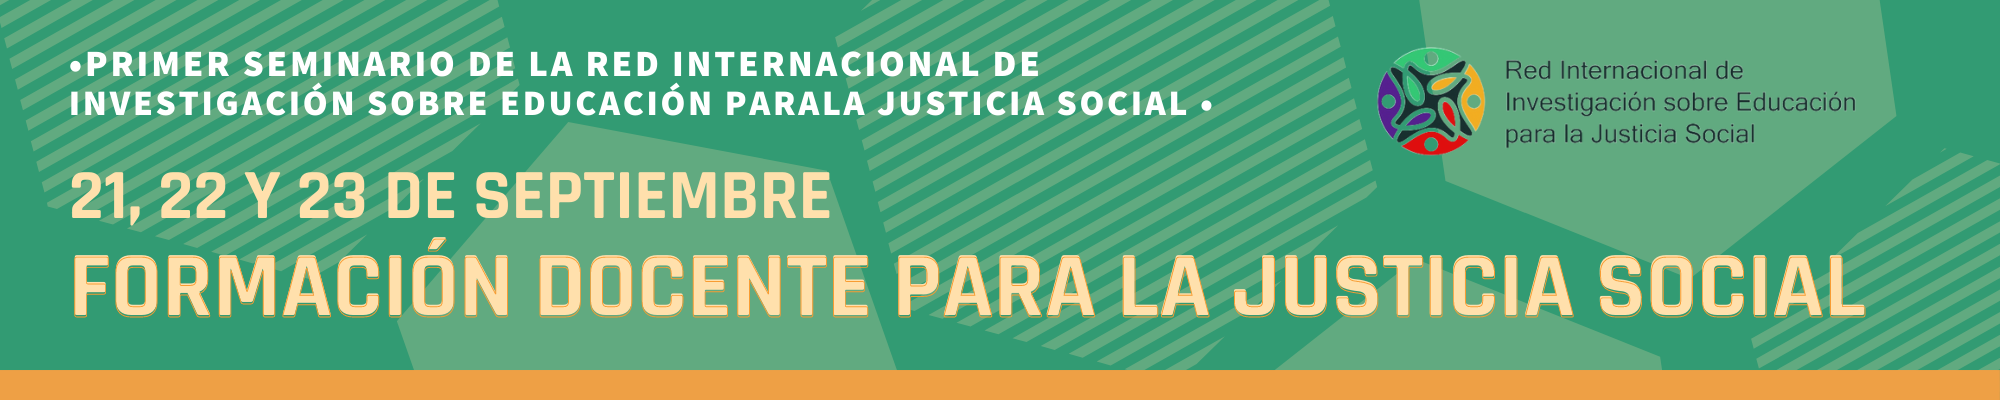 Formación docente para la justicia social (1)